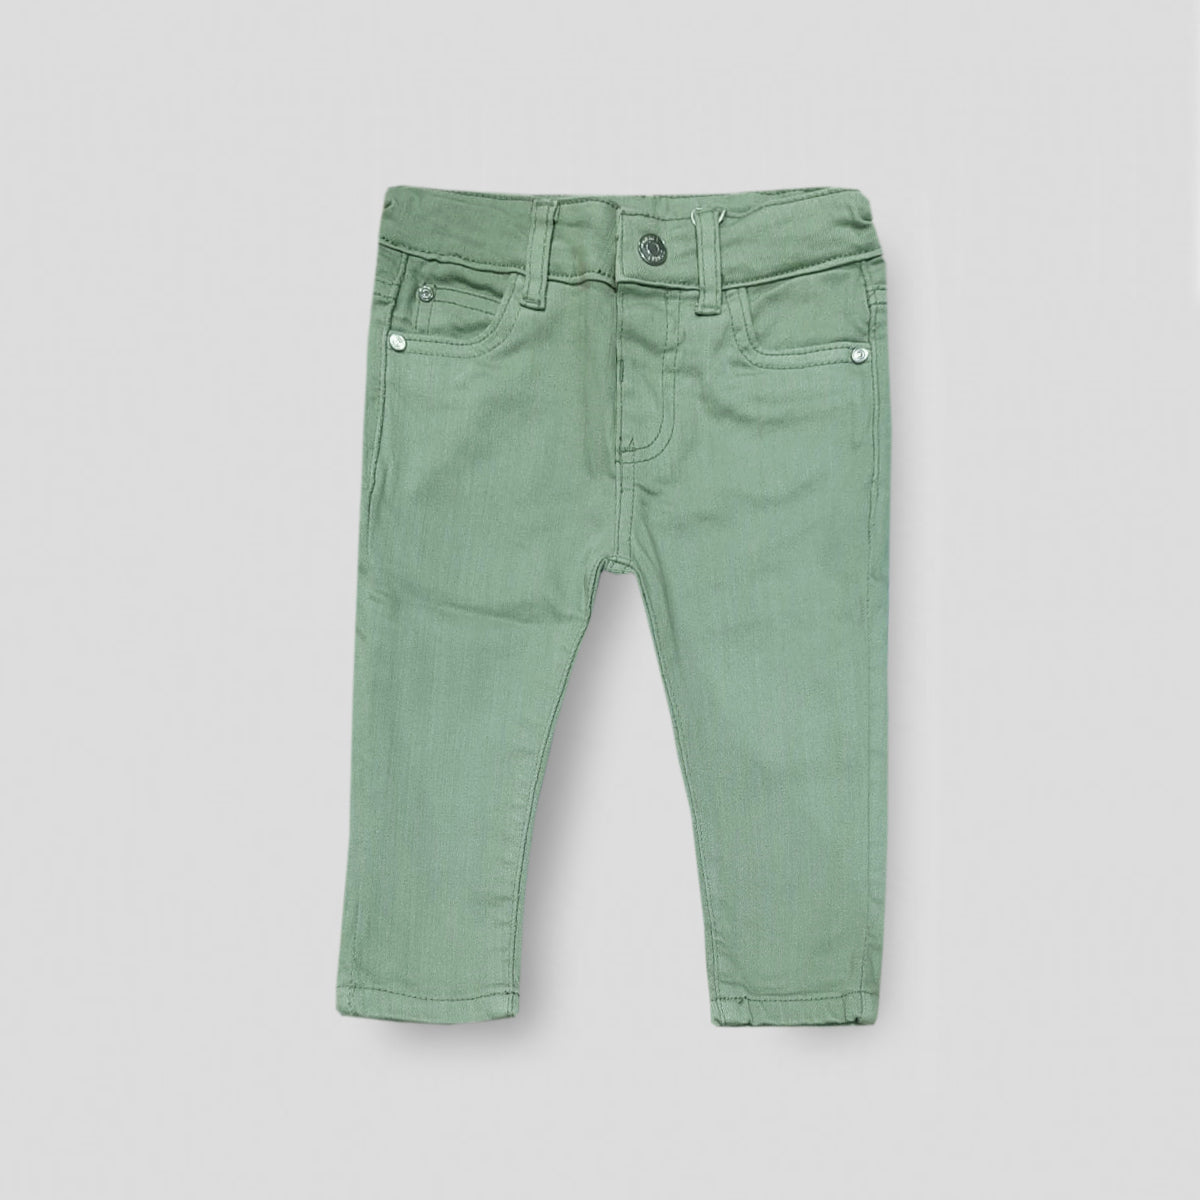 Pantalon verde